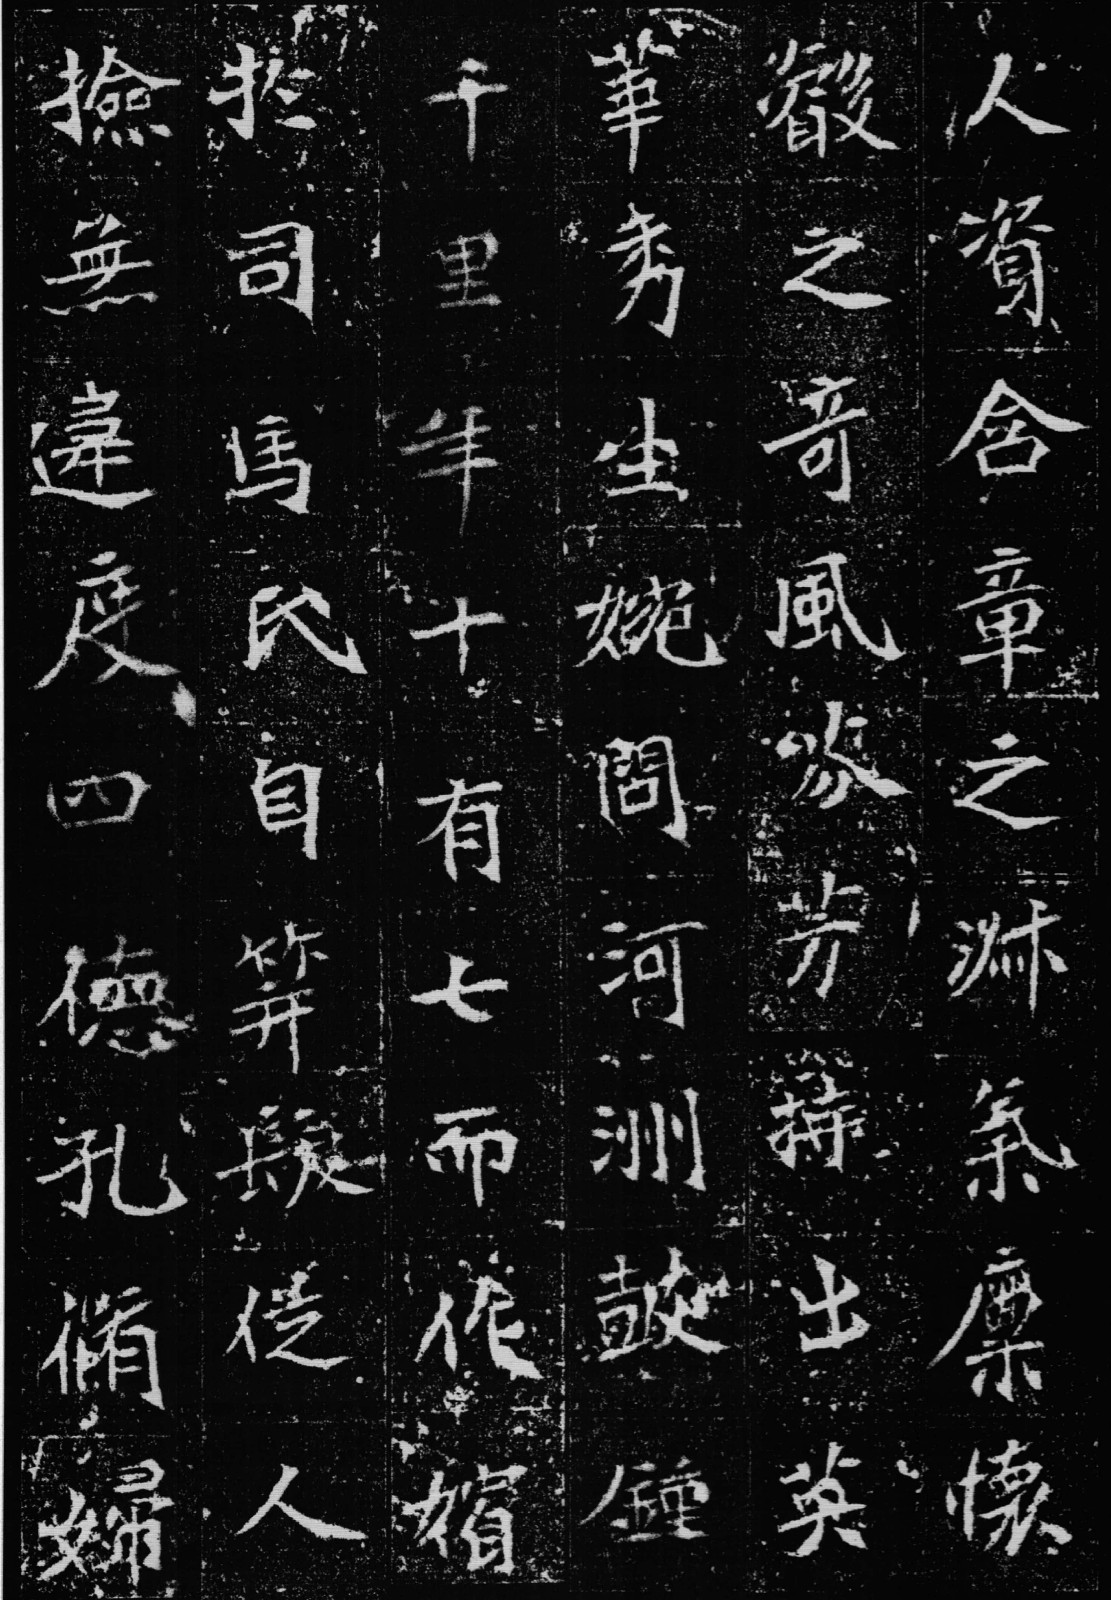 二玄社系列 北魏《司马景和妻孟敬训墓志铭》版本好 印刷精良